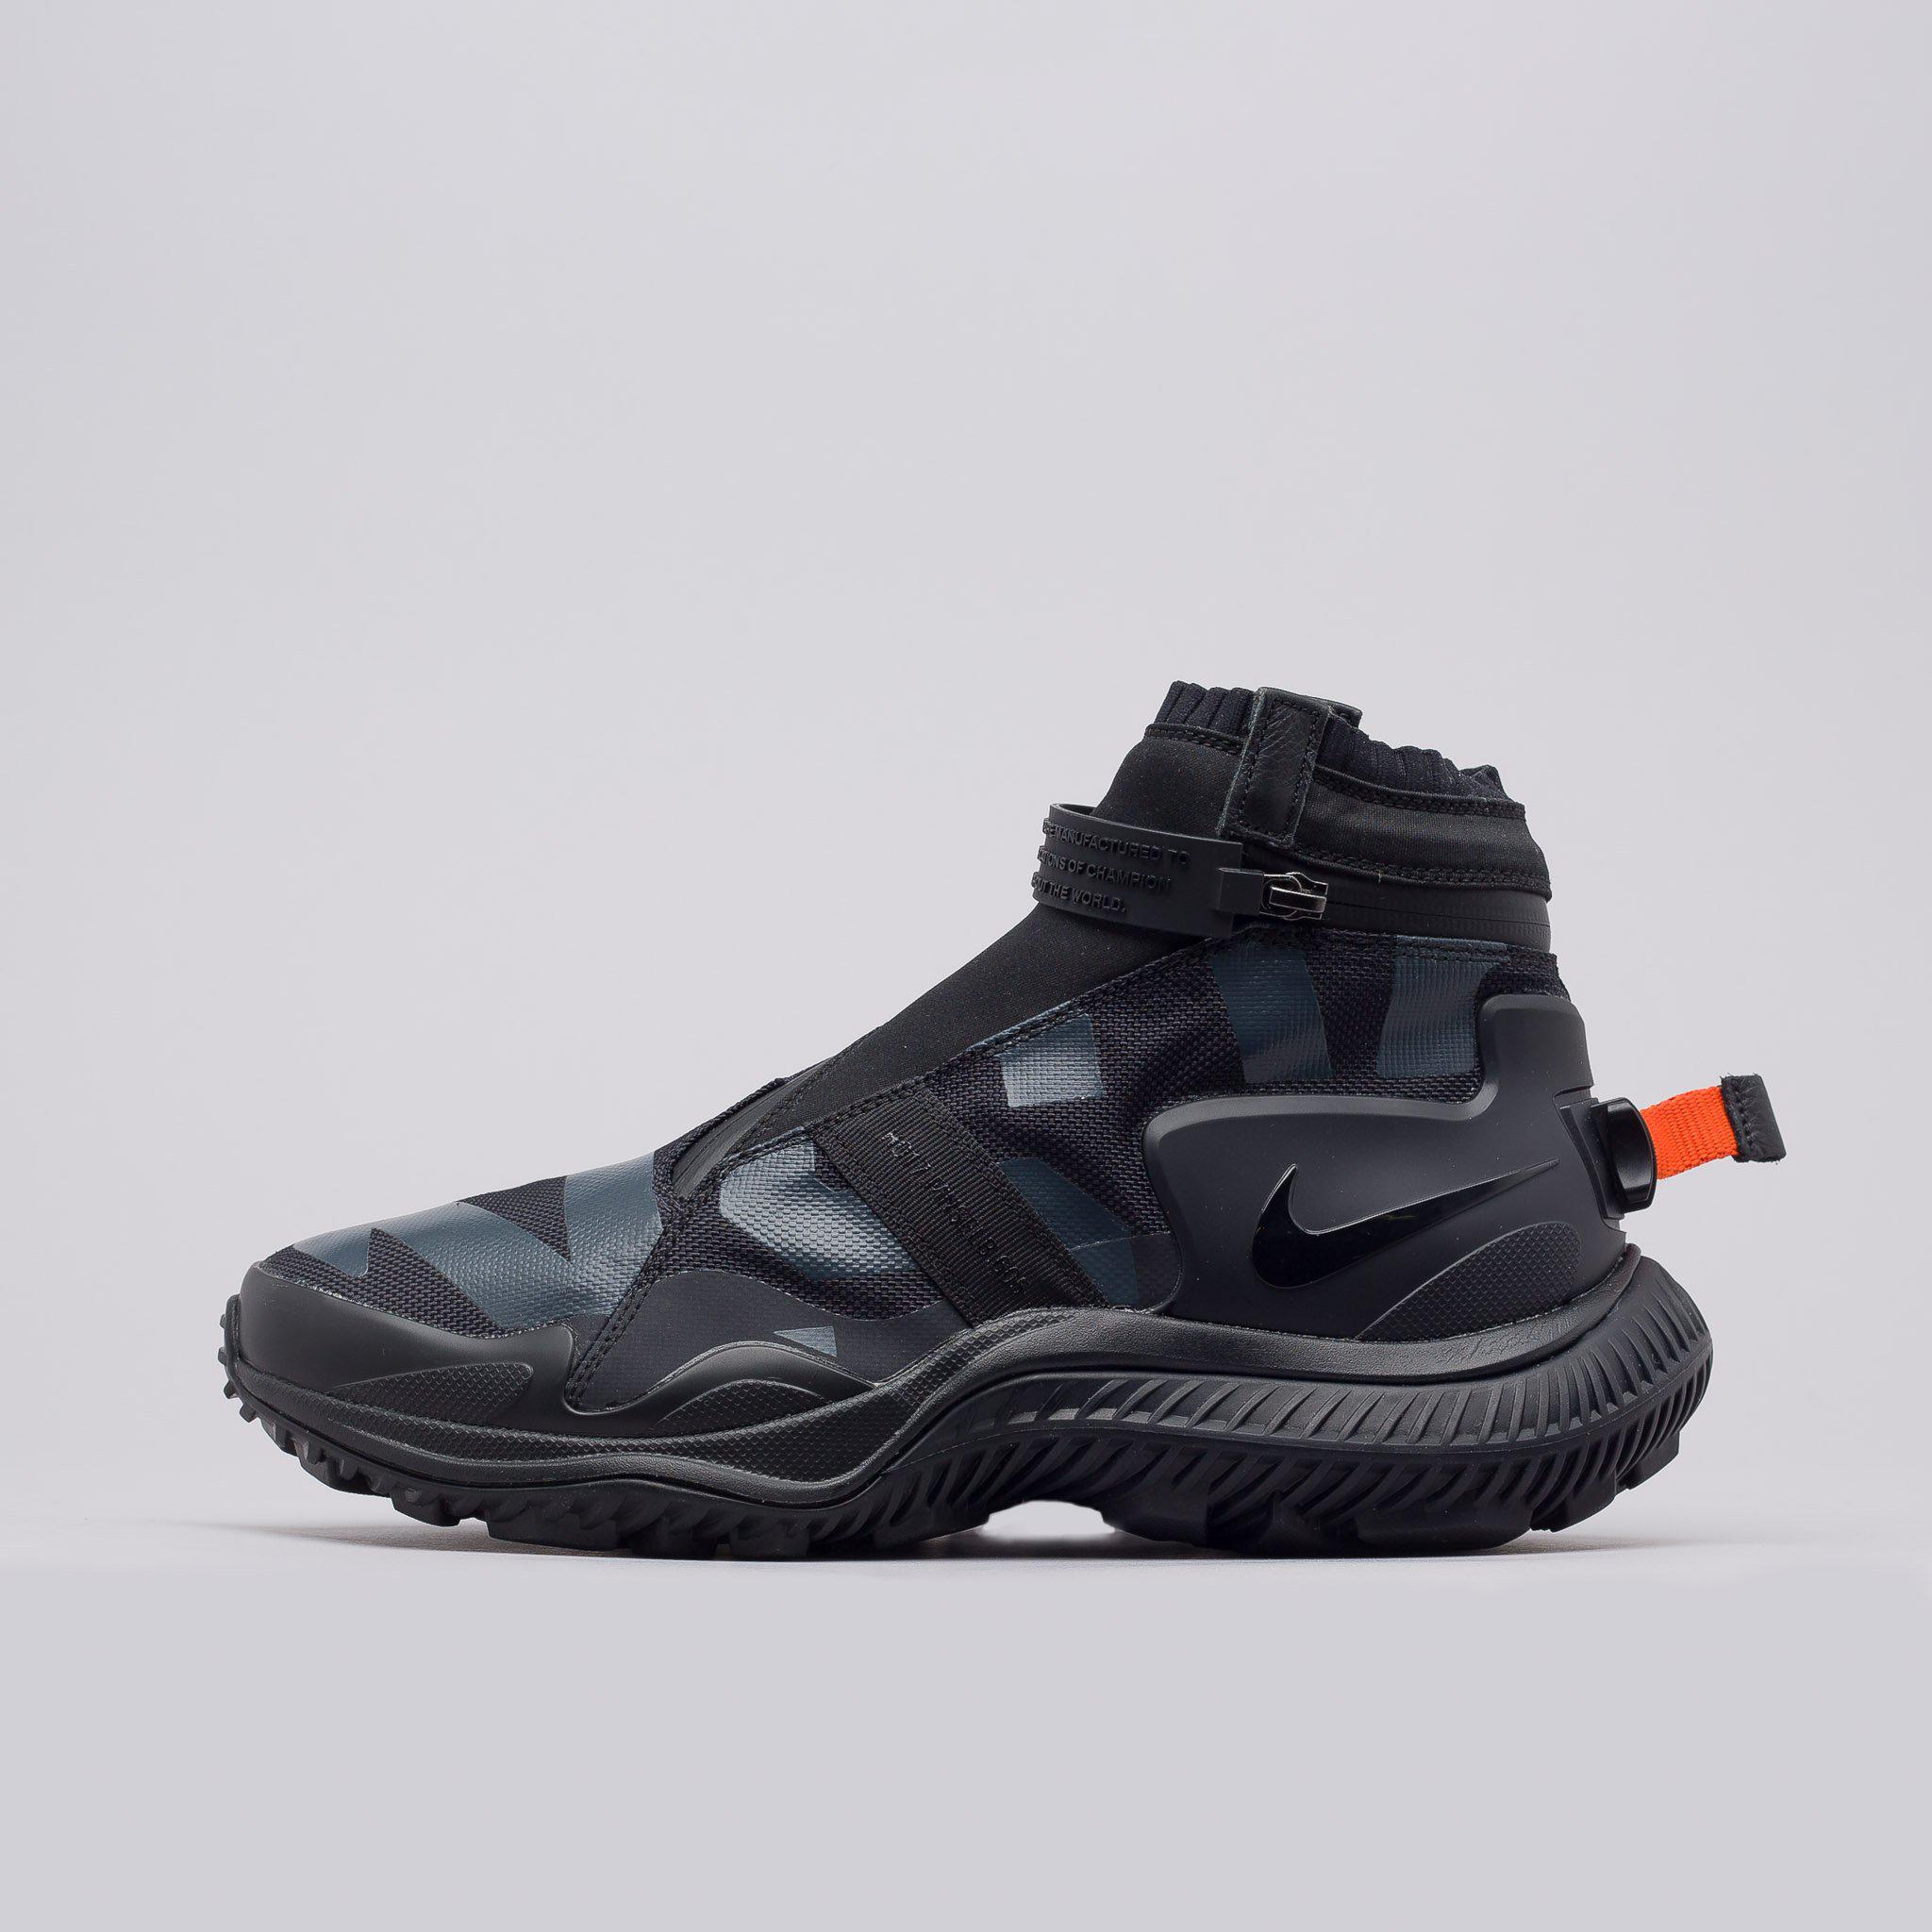 Nike Rubber Acg Gaiter Boot In Black for Men - Lyst